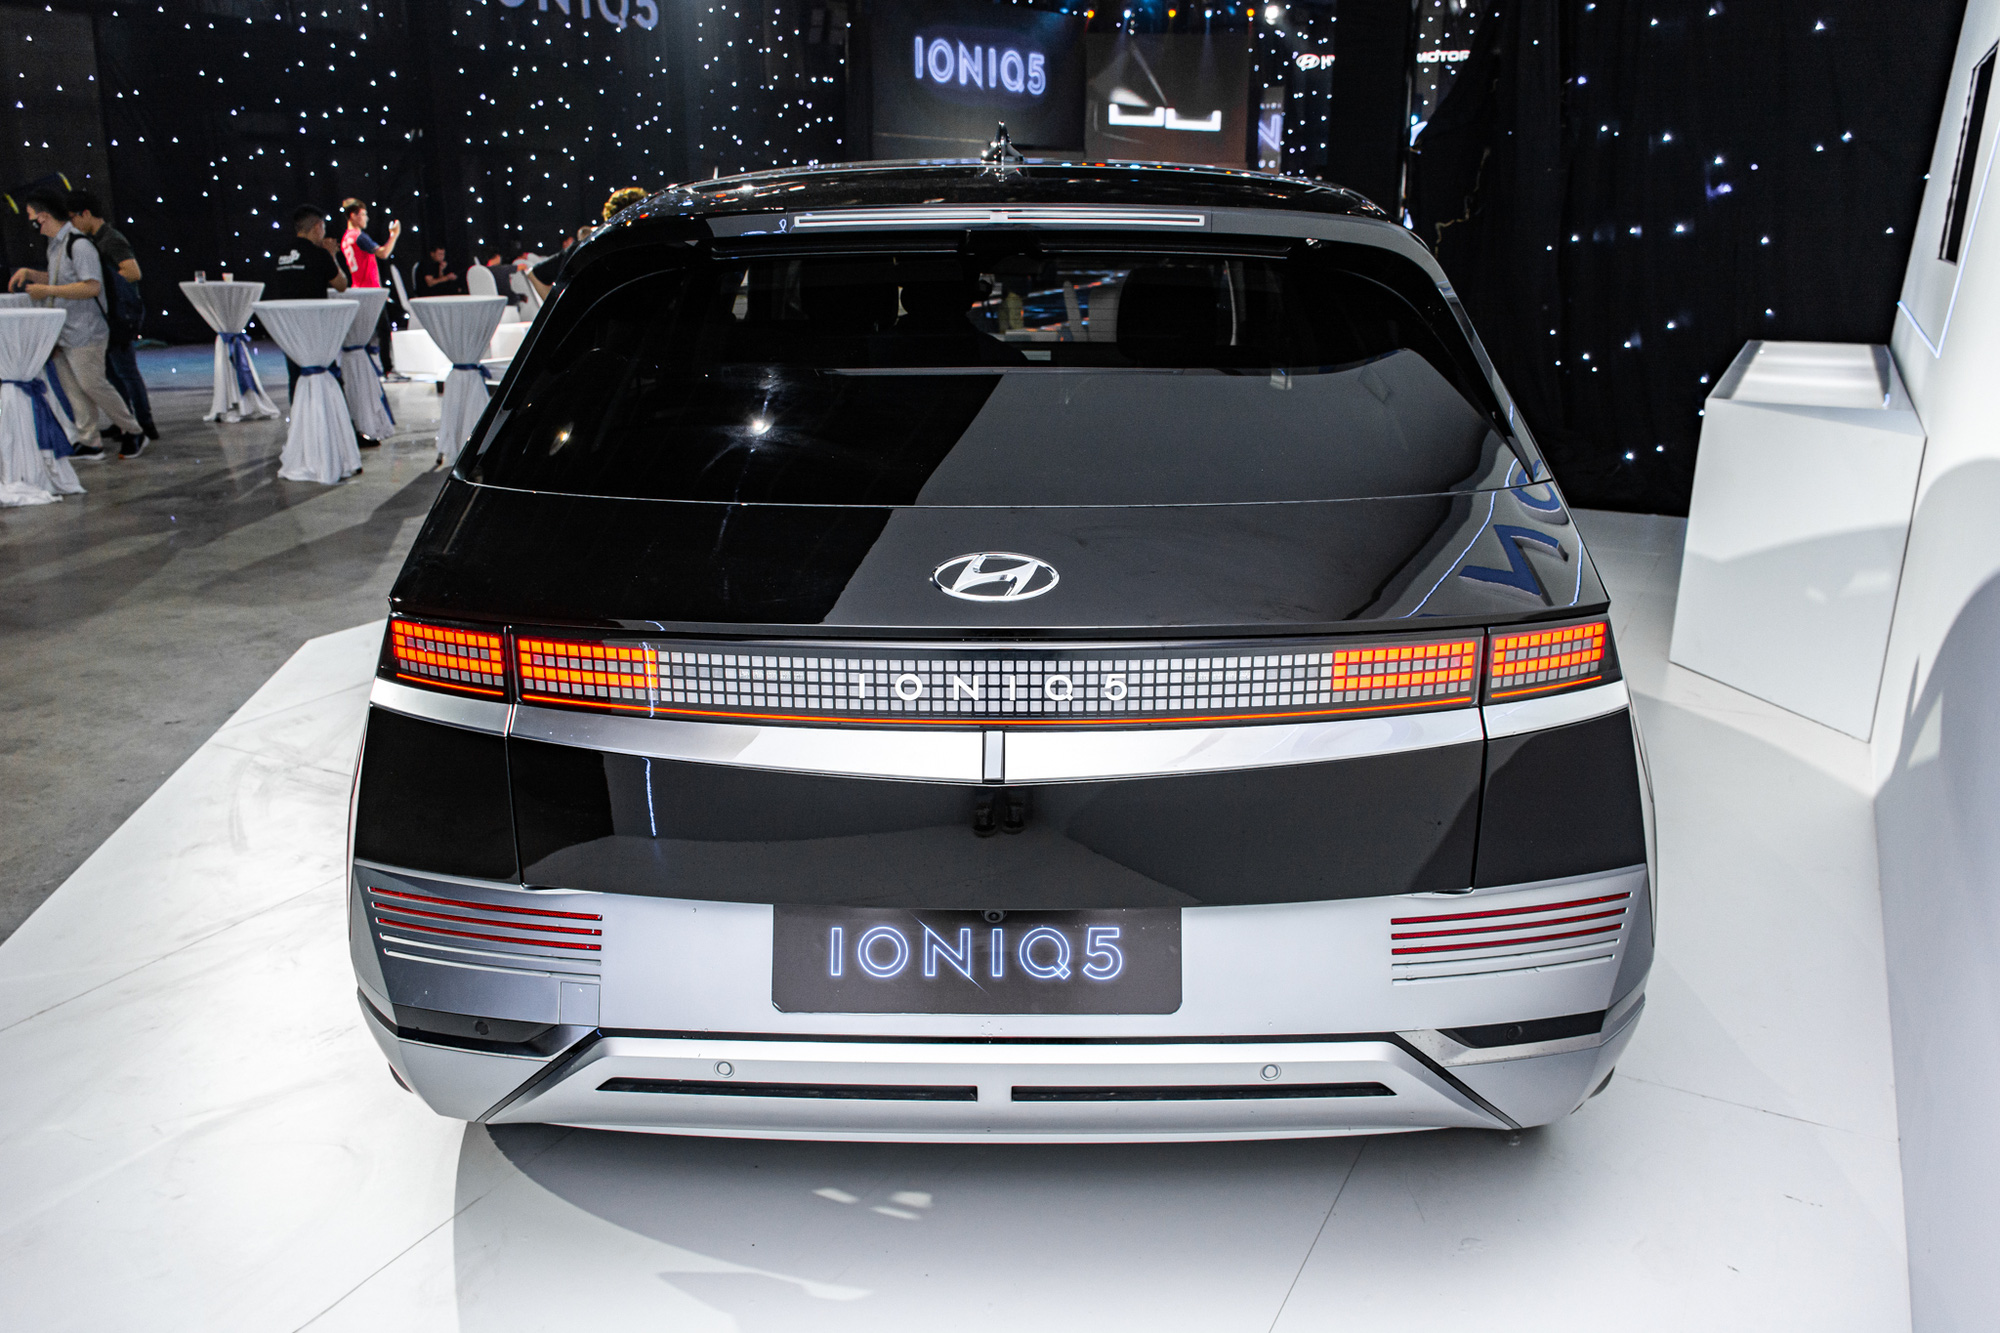 Hyundai lắp ráp Santa Fe Hybrid và Ioniq 5 tại Việt Nam: Kỳ vọng giá tốt để so kè Kia và VinFast - Ảnh 7.